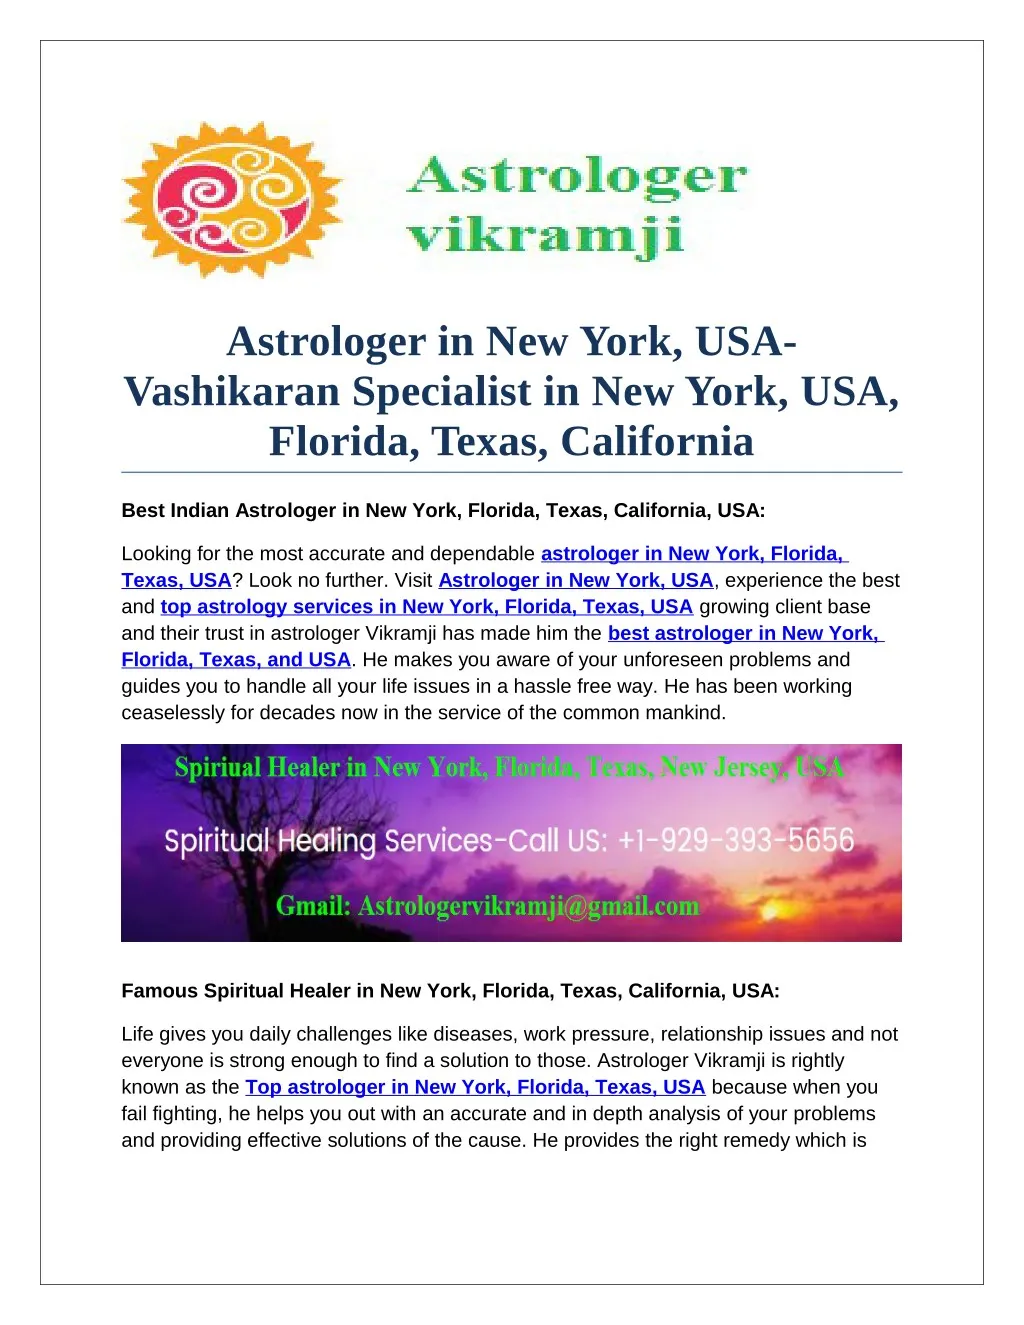 astrologer in new york usa vashikaran specialist